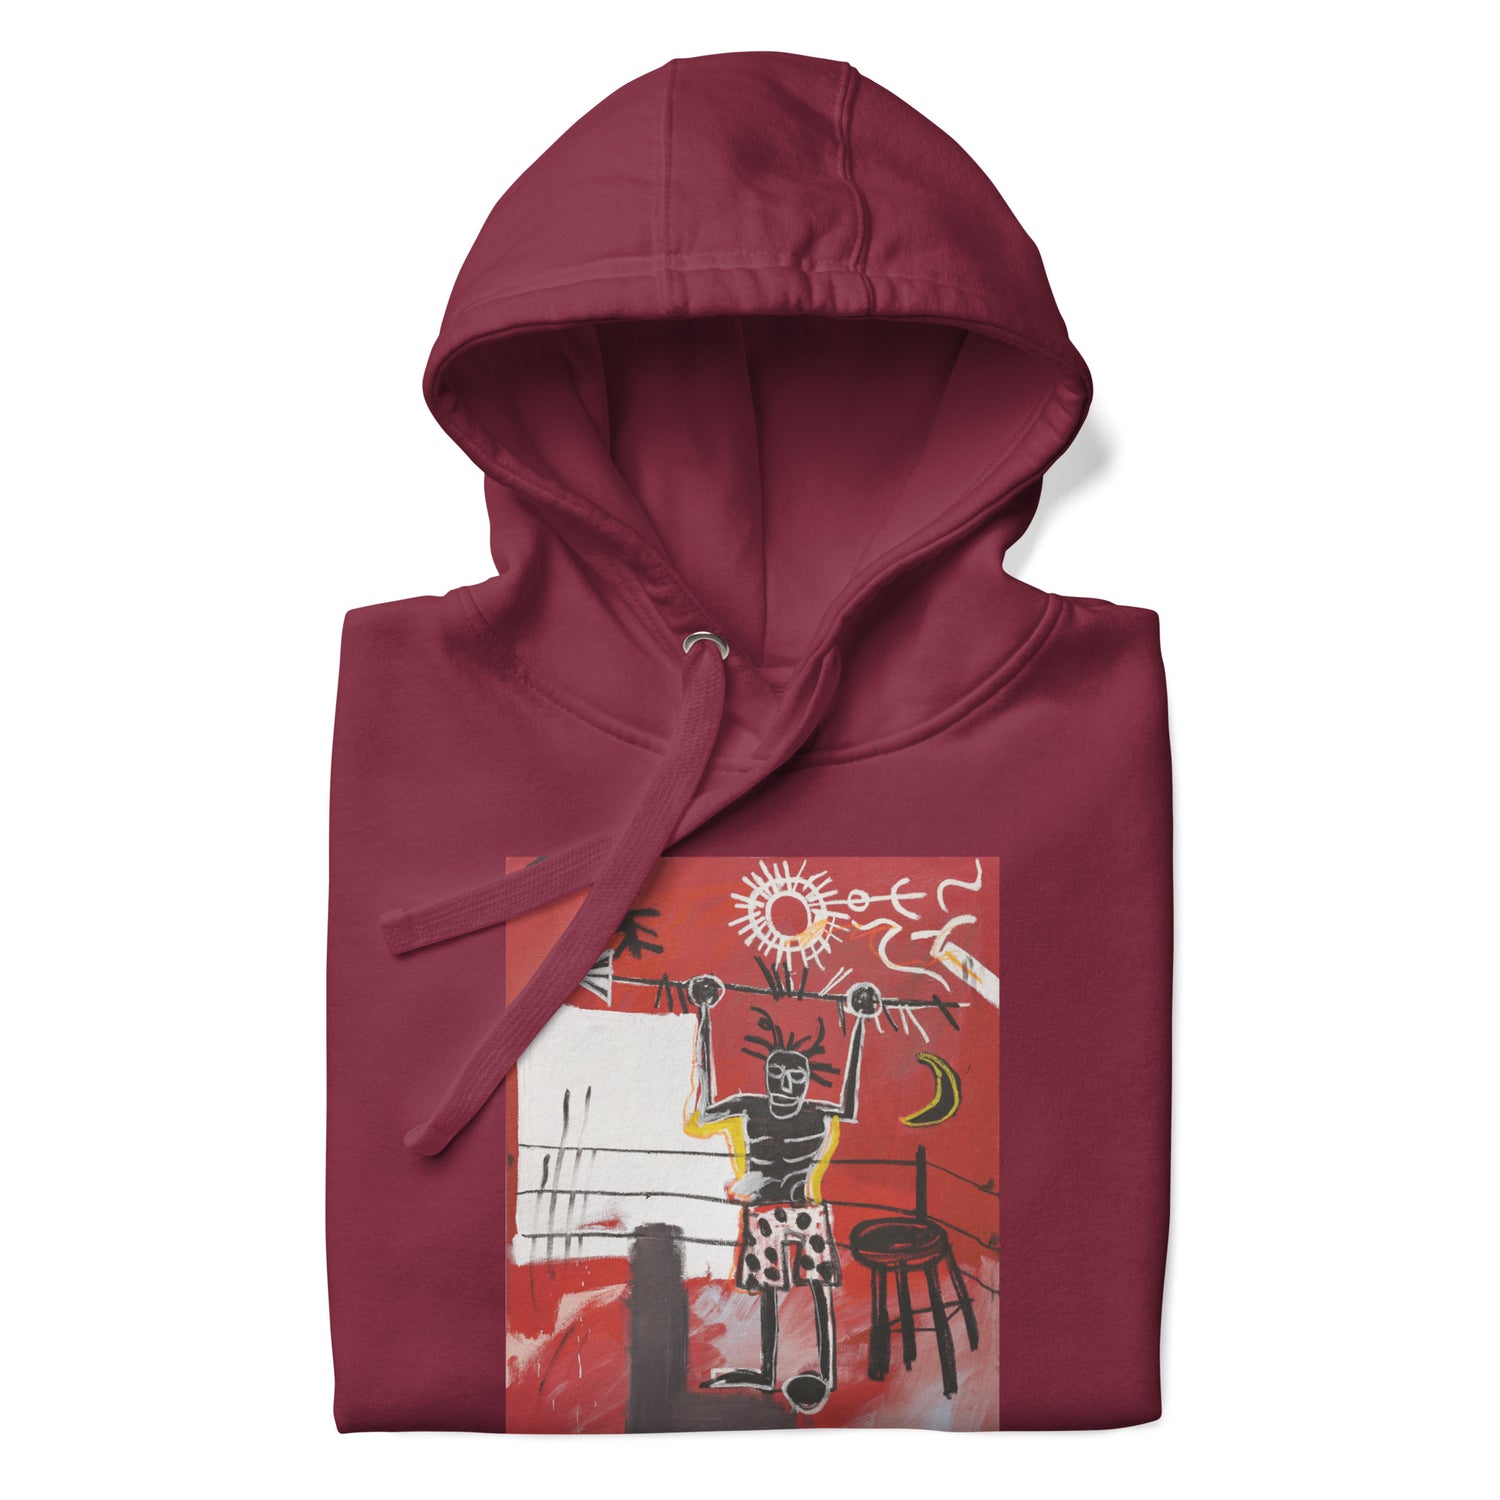 Jean-Michel Basquiat "The Ring" Artwork Printed Premium Streetwear Sweatshirt Hoodie Burgundy Red